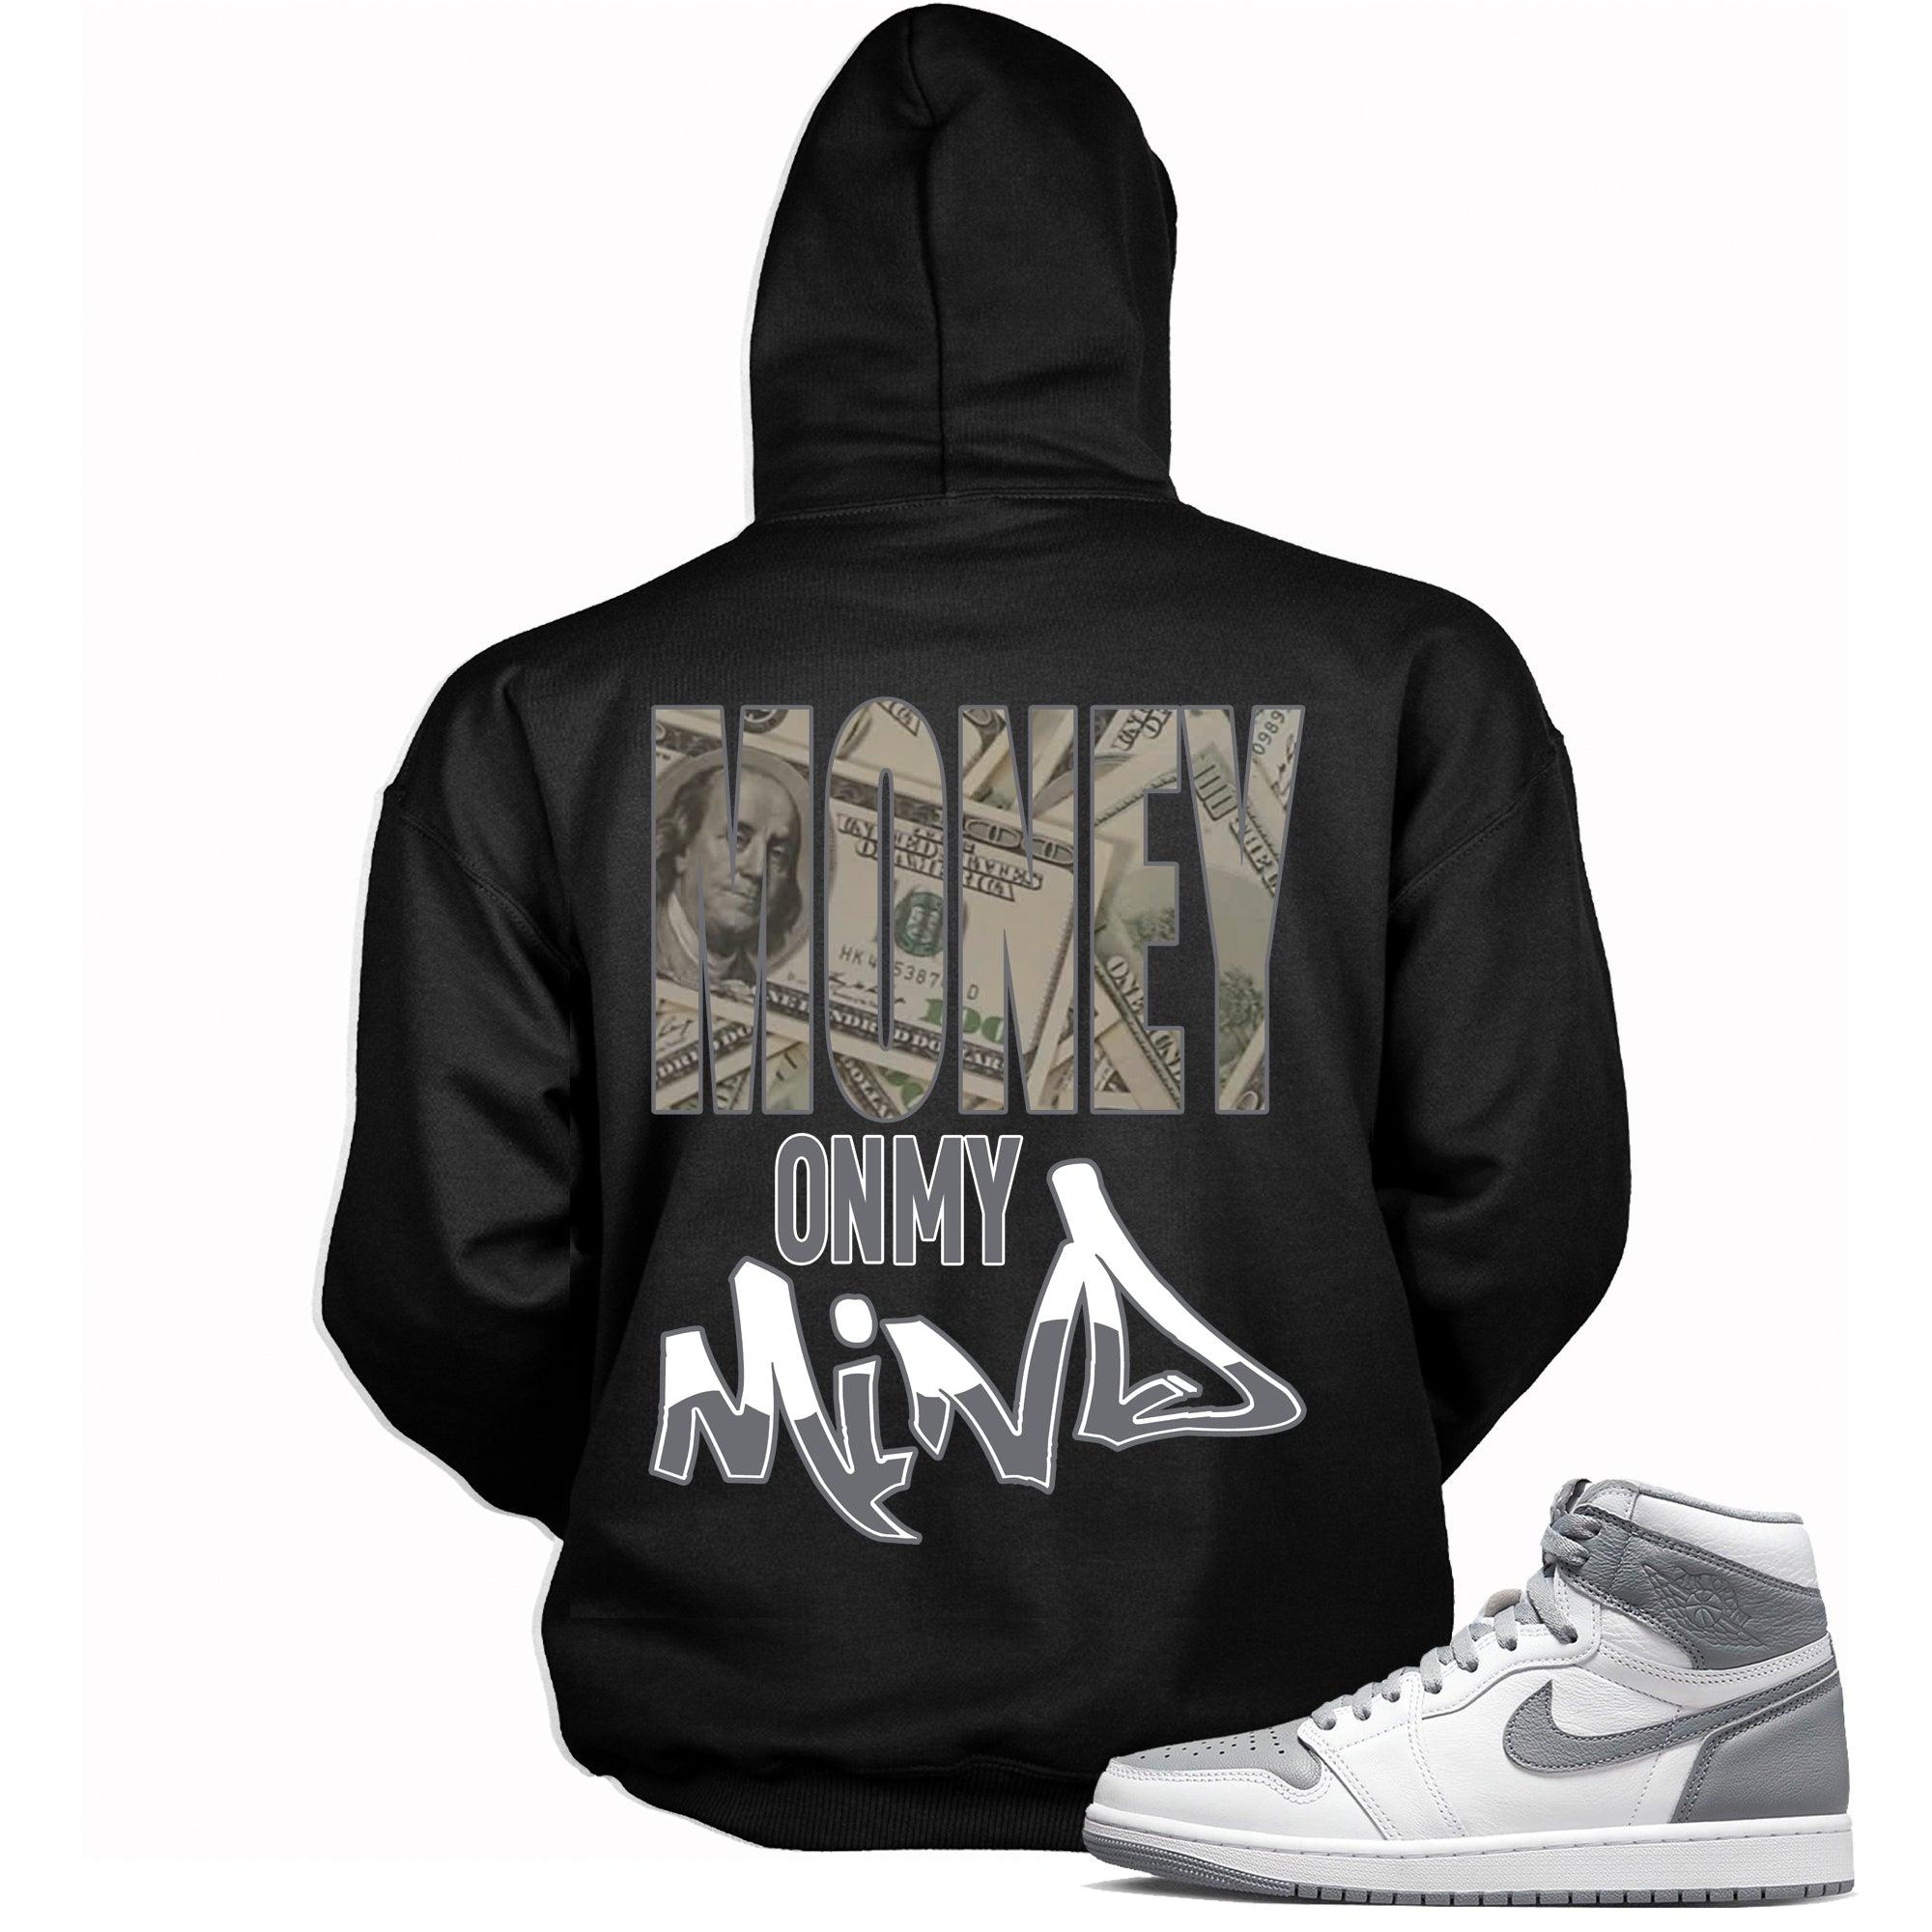 Money on my Mind Sneaker Hoodie for Jordan 1s photo